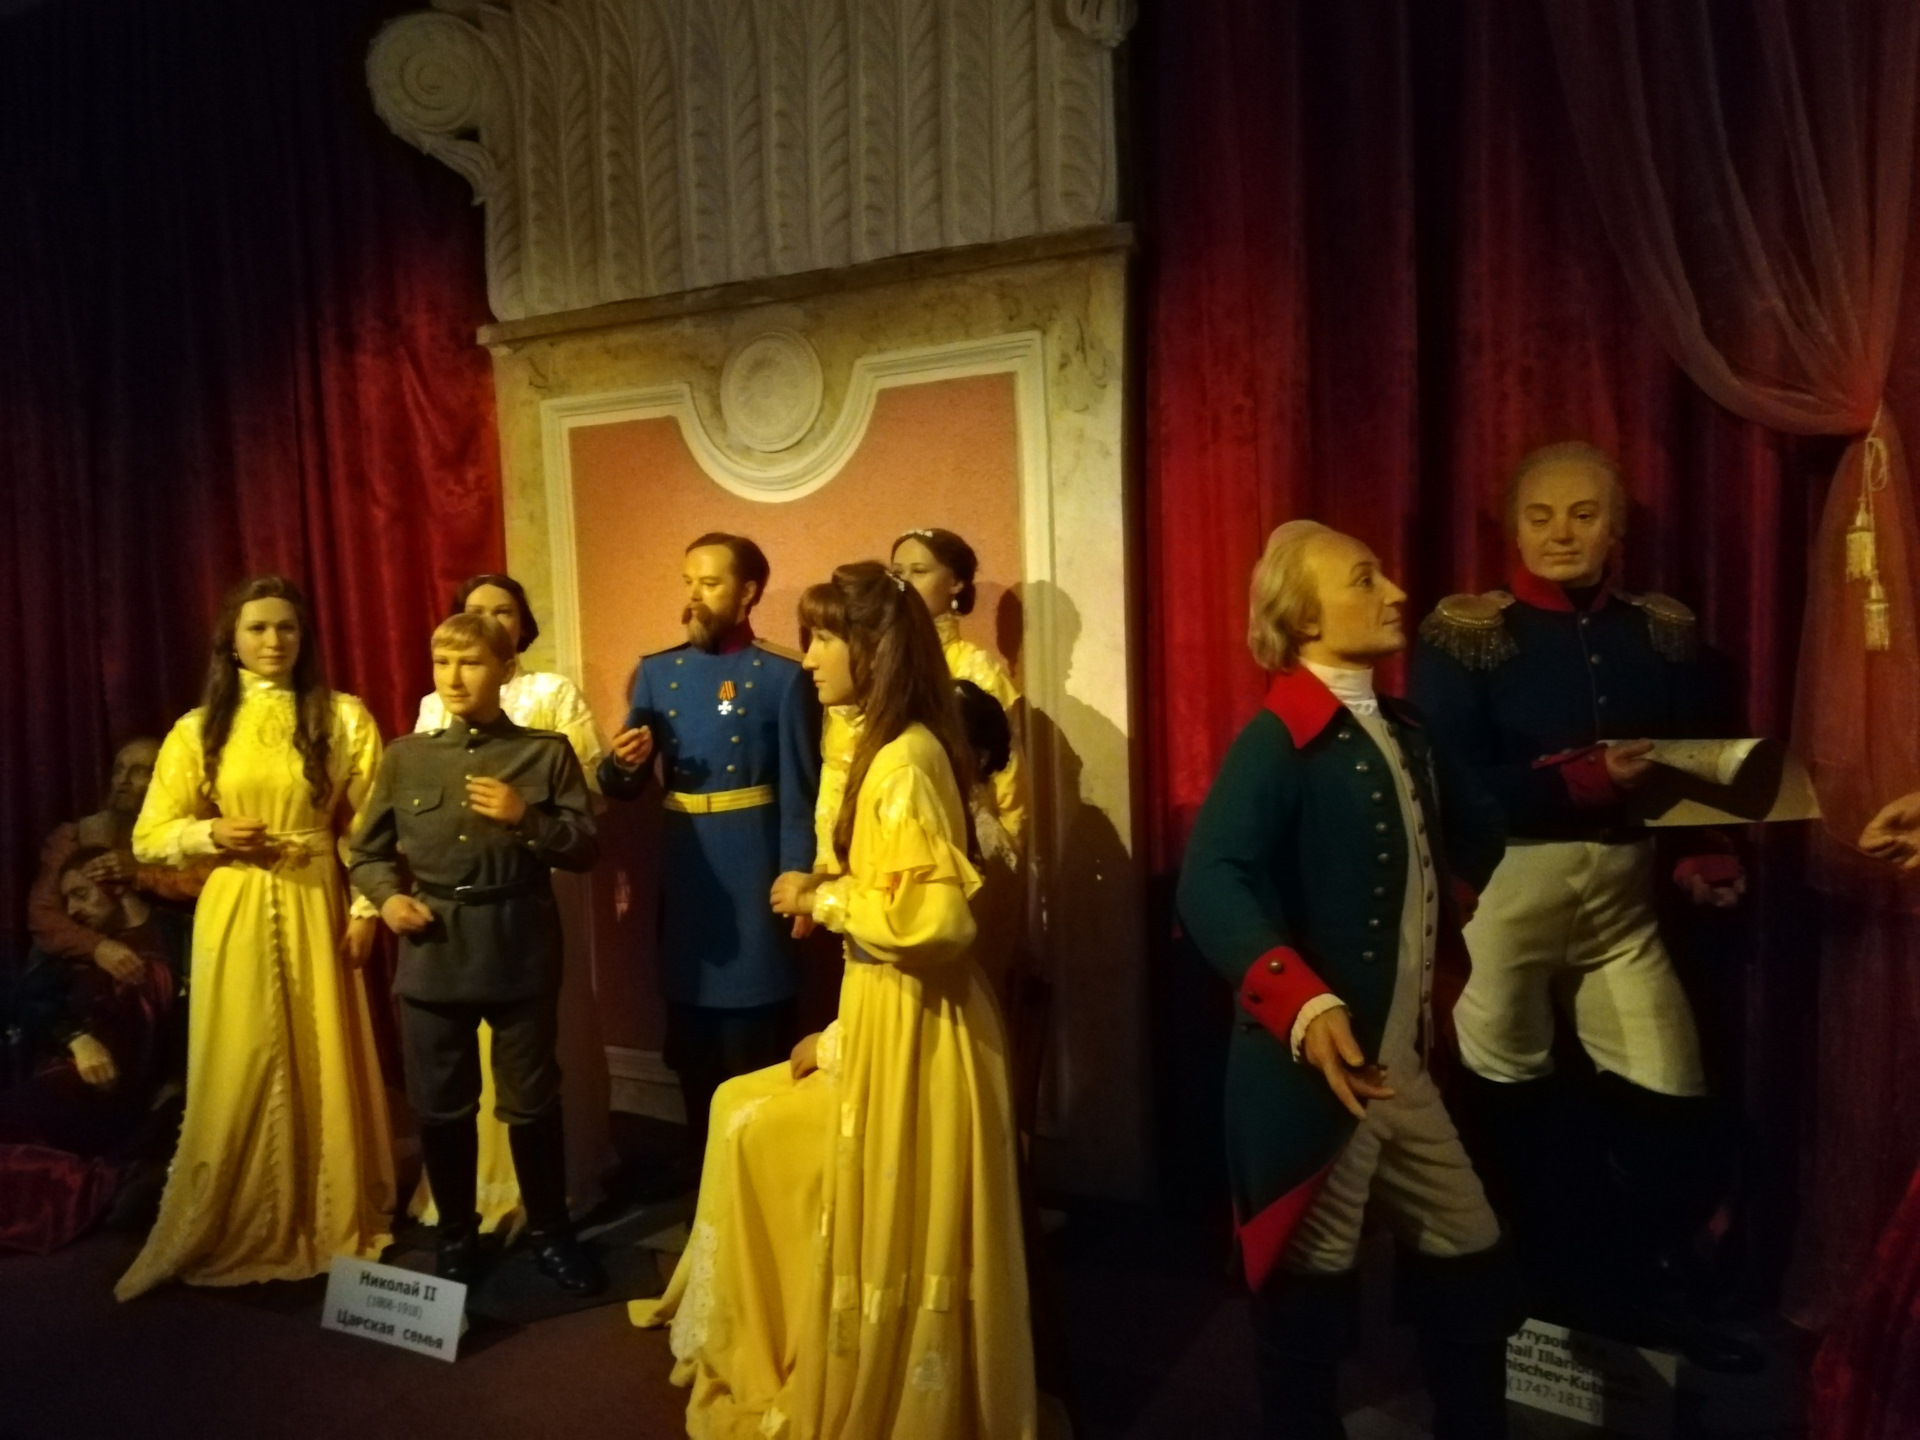 экспонаты музея восковых фигур в санкт петербурге